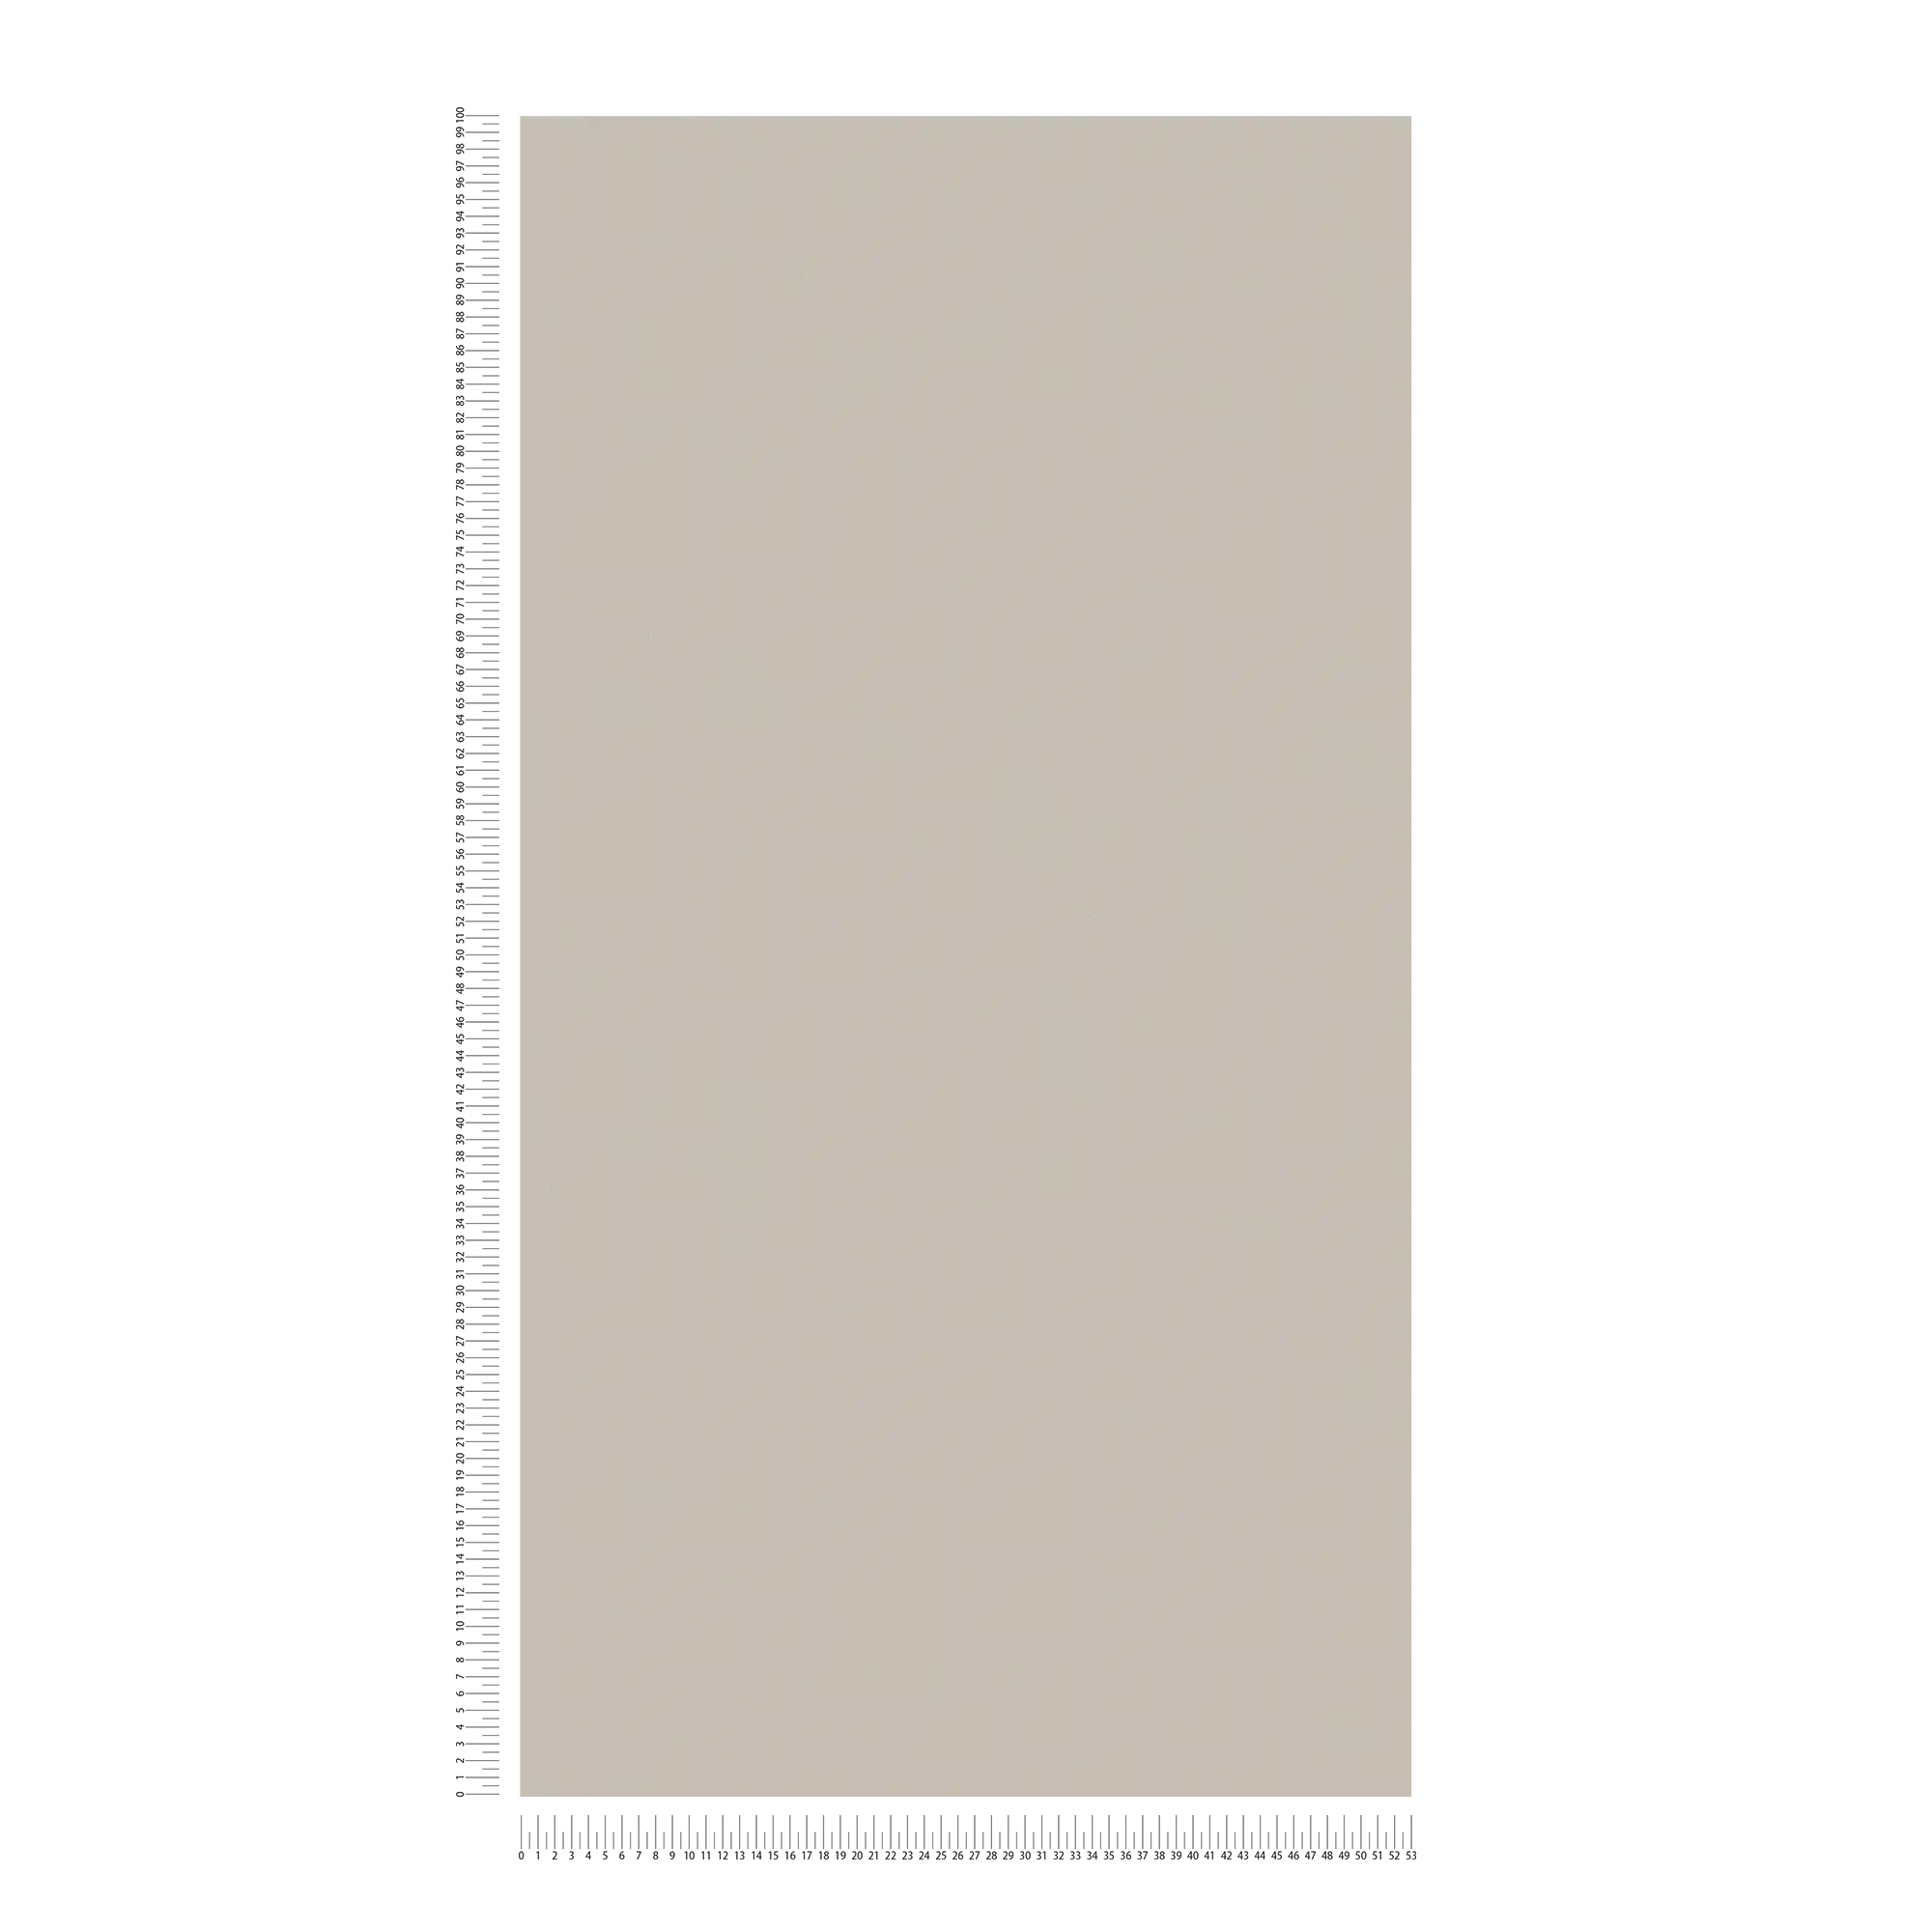             Carta da parati unitaria di colore caldo, strutturata - marrone, grigio
        